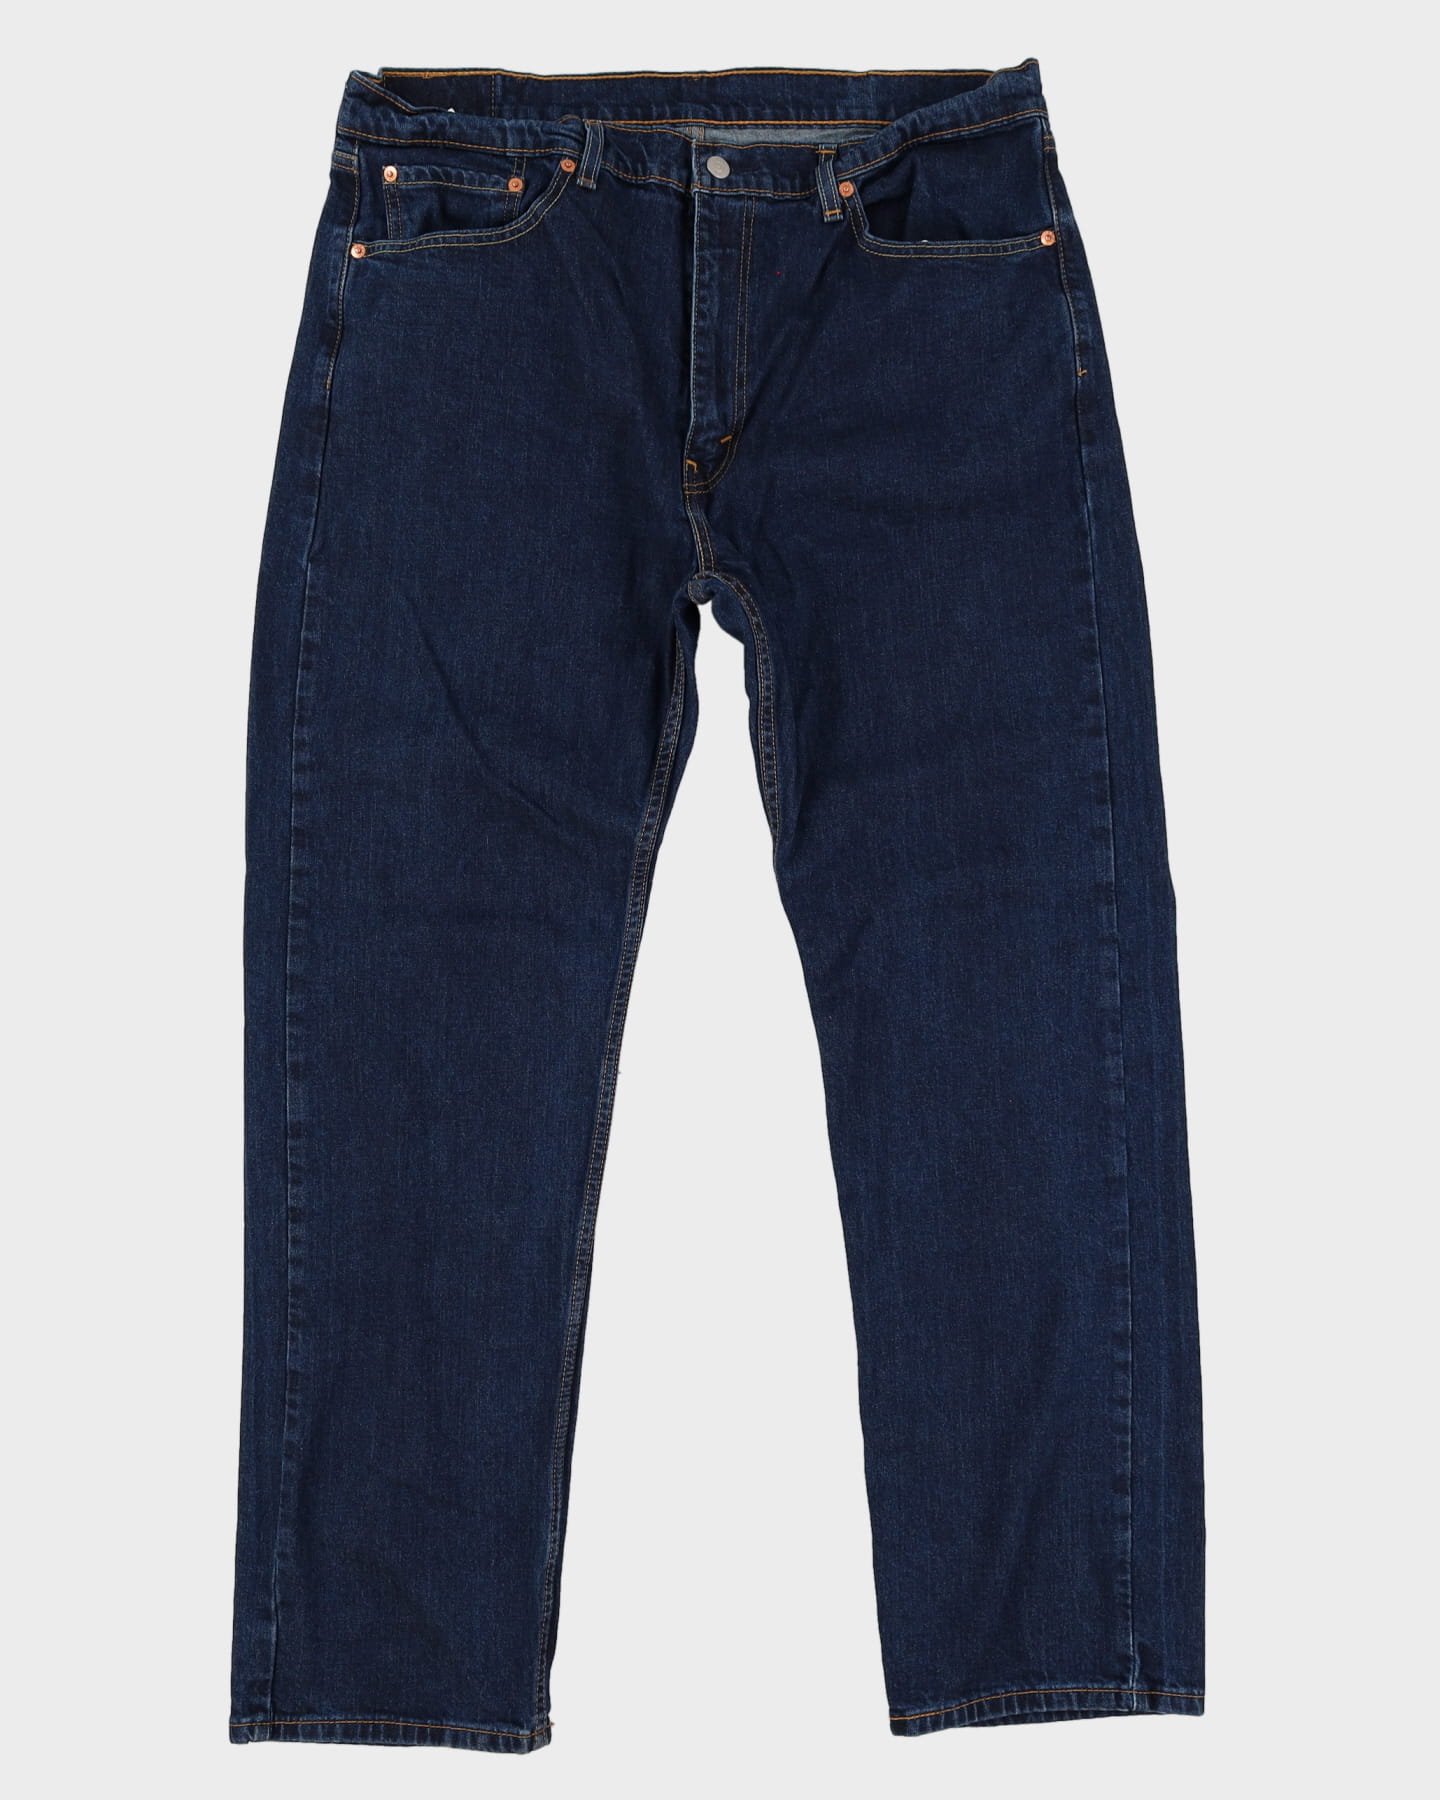 Levi's 505 Blue Jeans - W38 L32